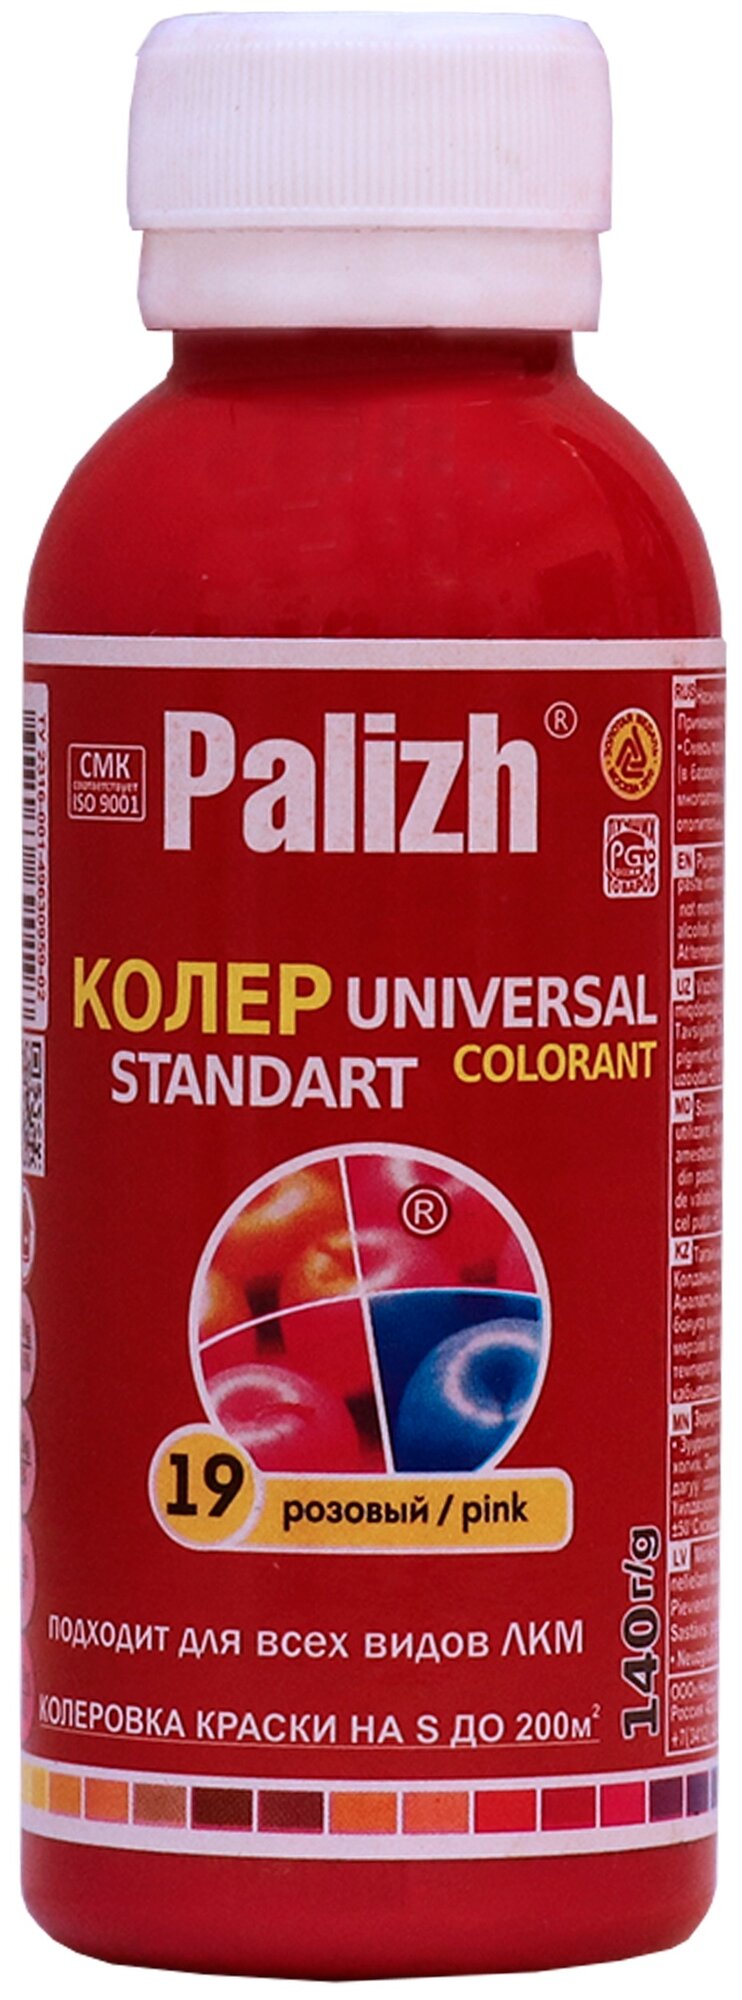   Palizh Universal Standart ST-19  0.1 